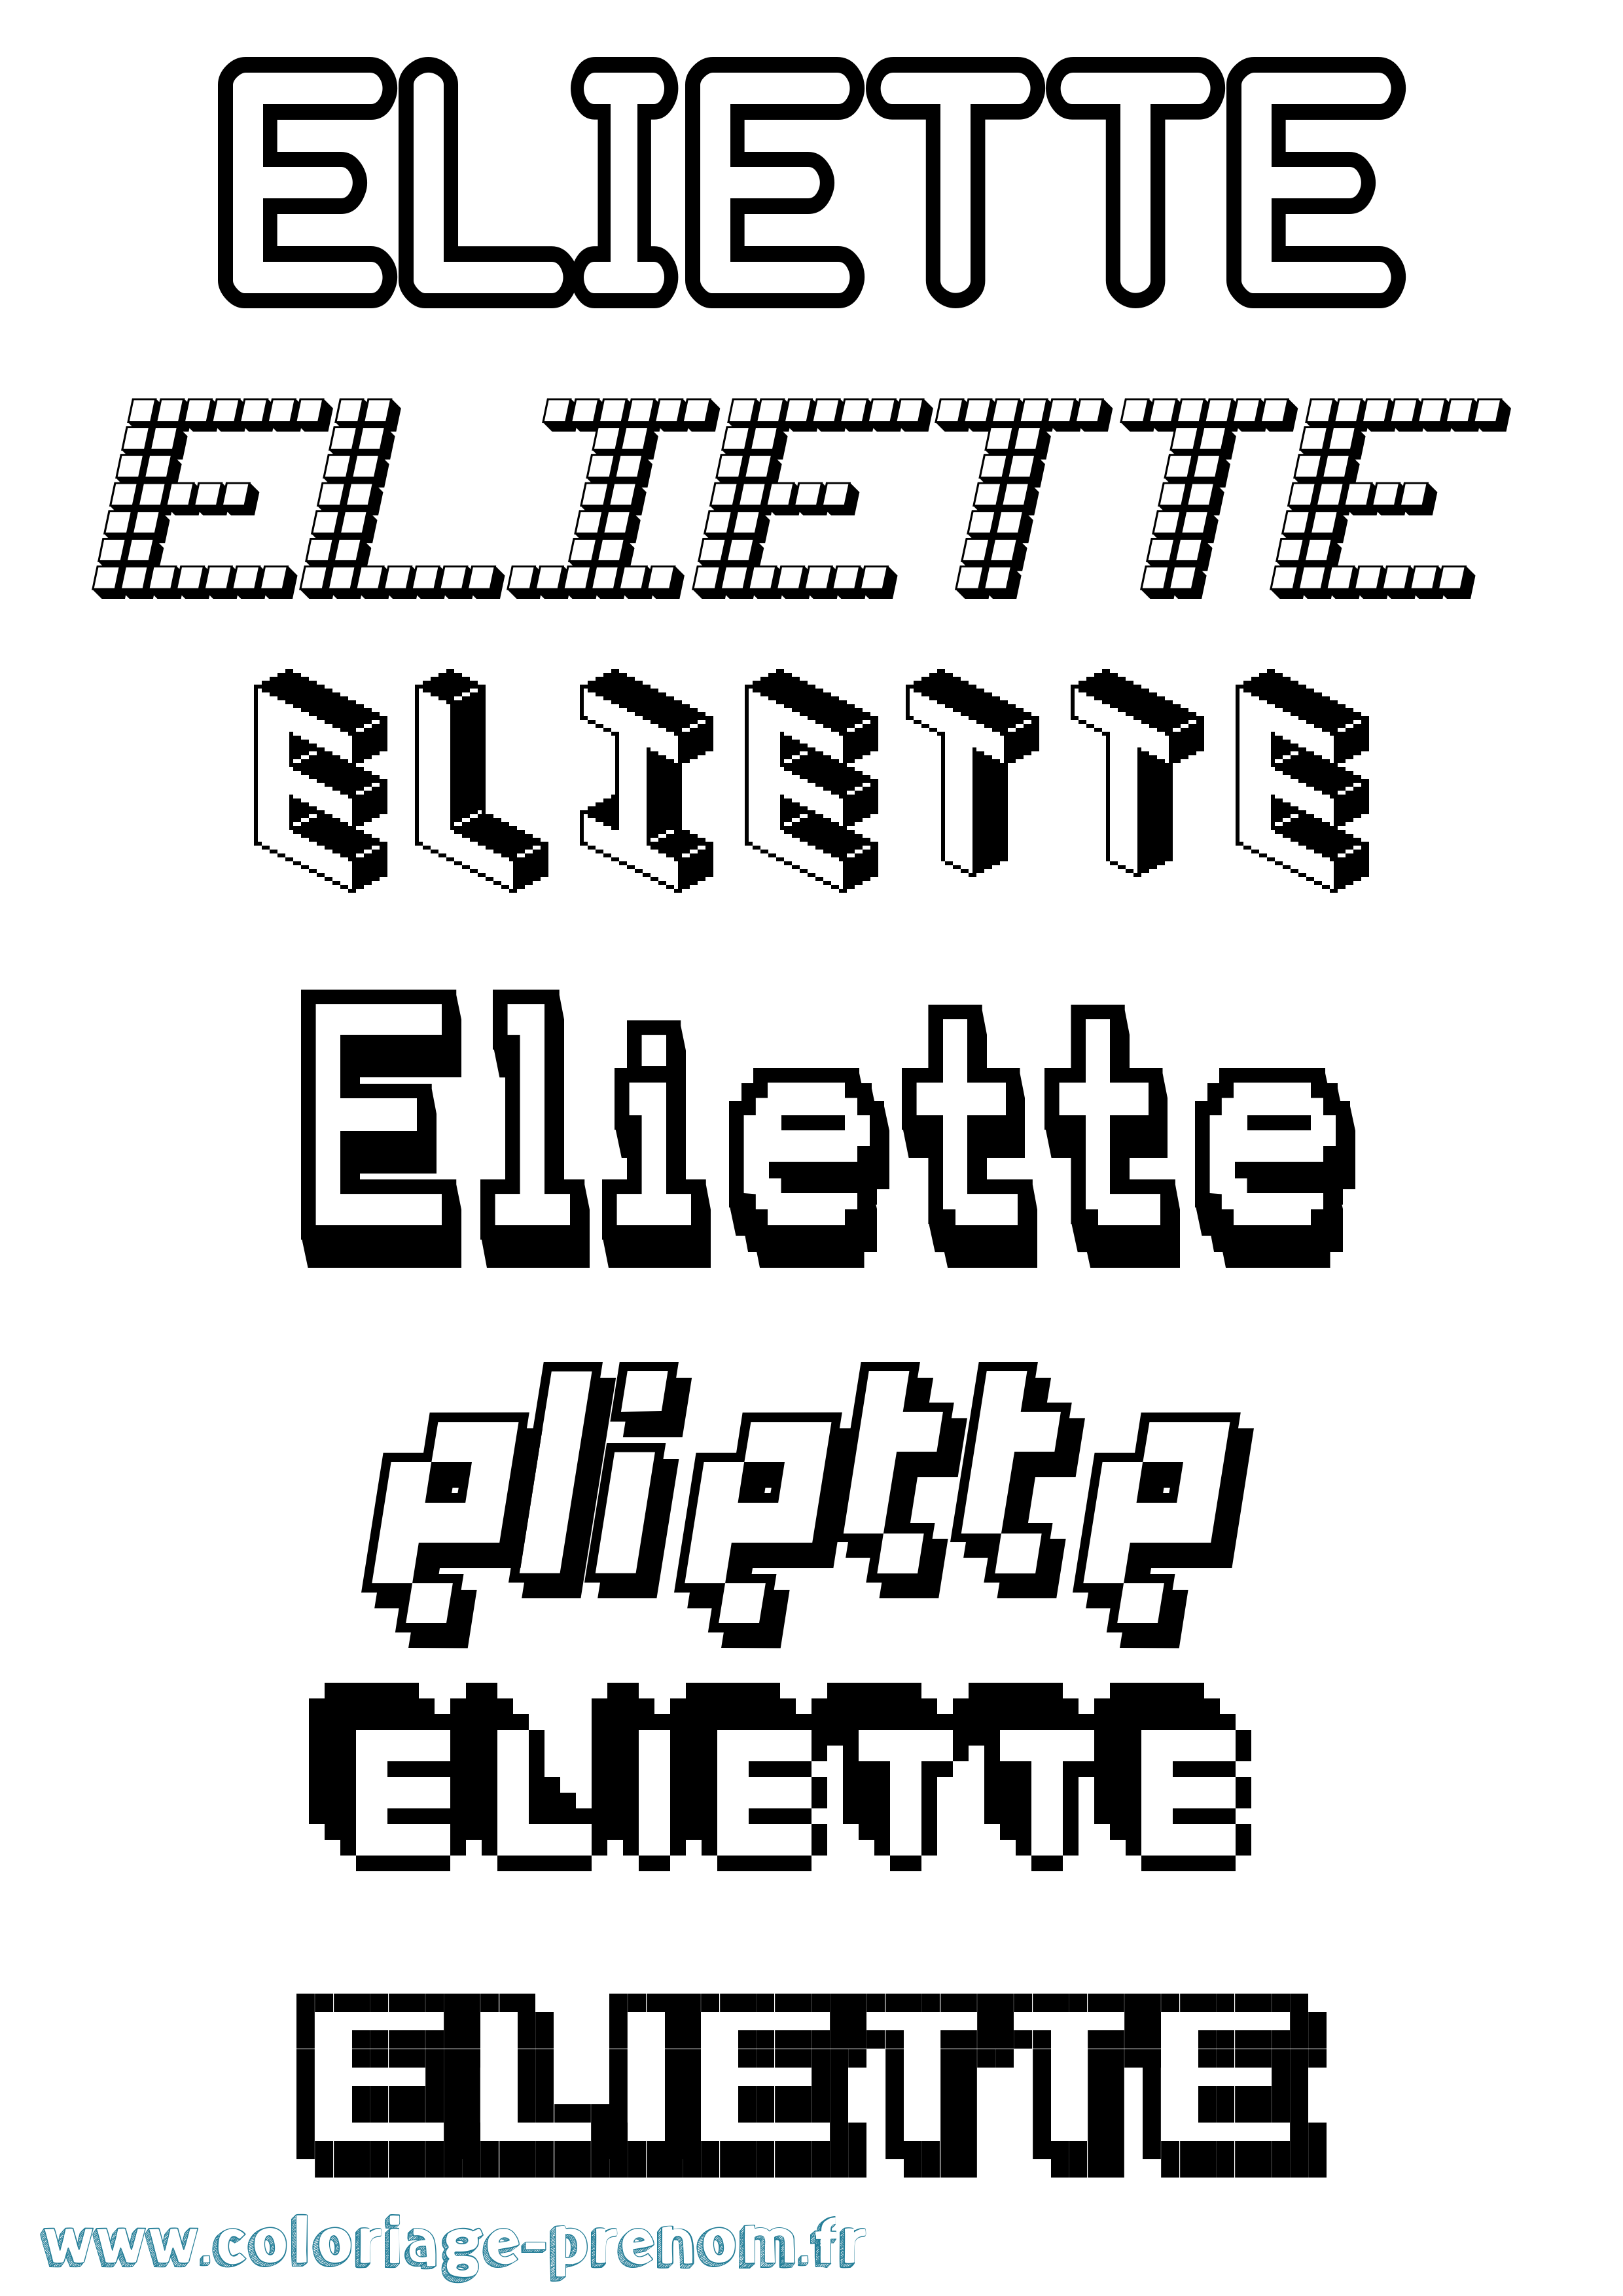 Coloriage prénom Eliette Pixel